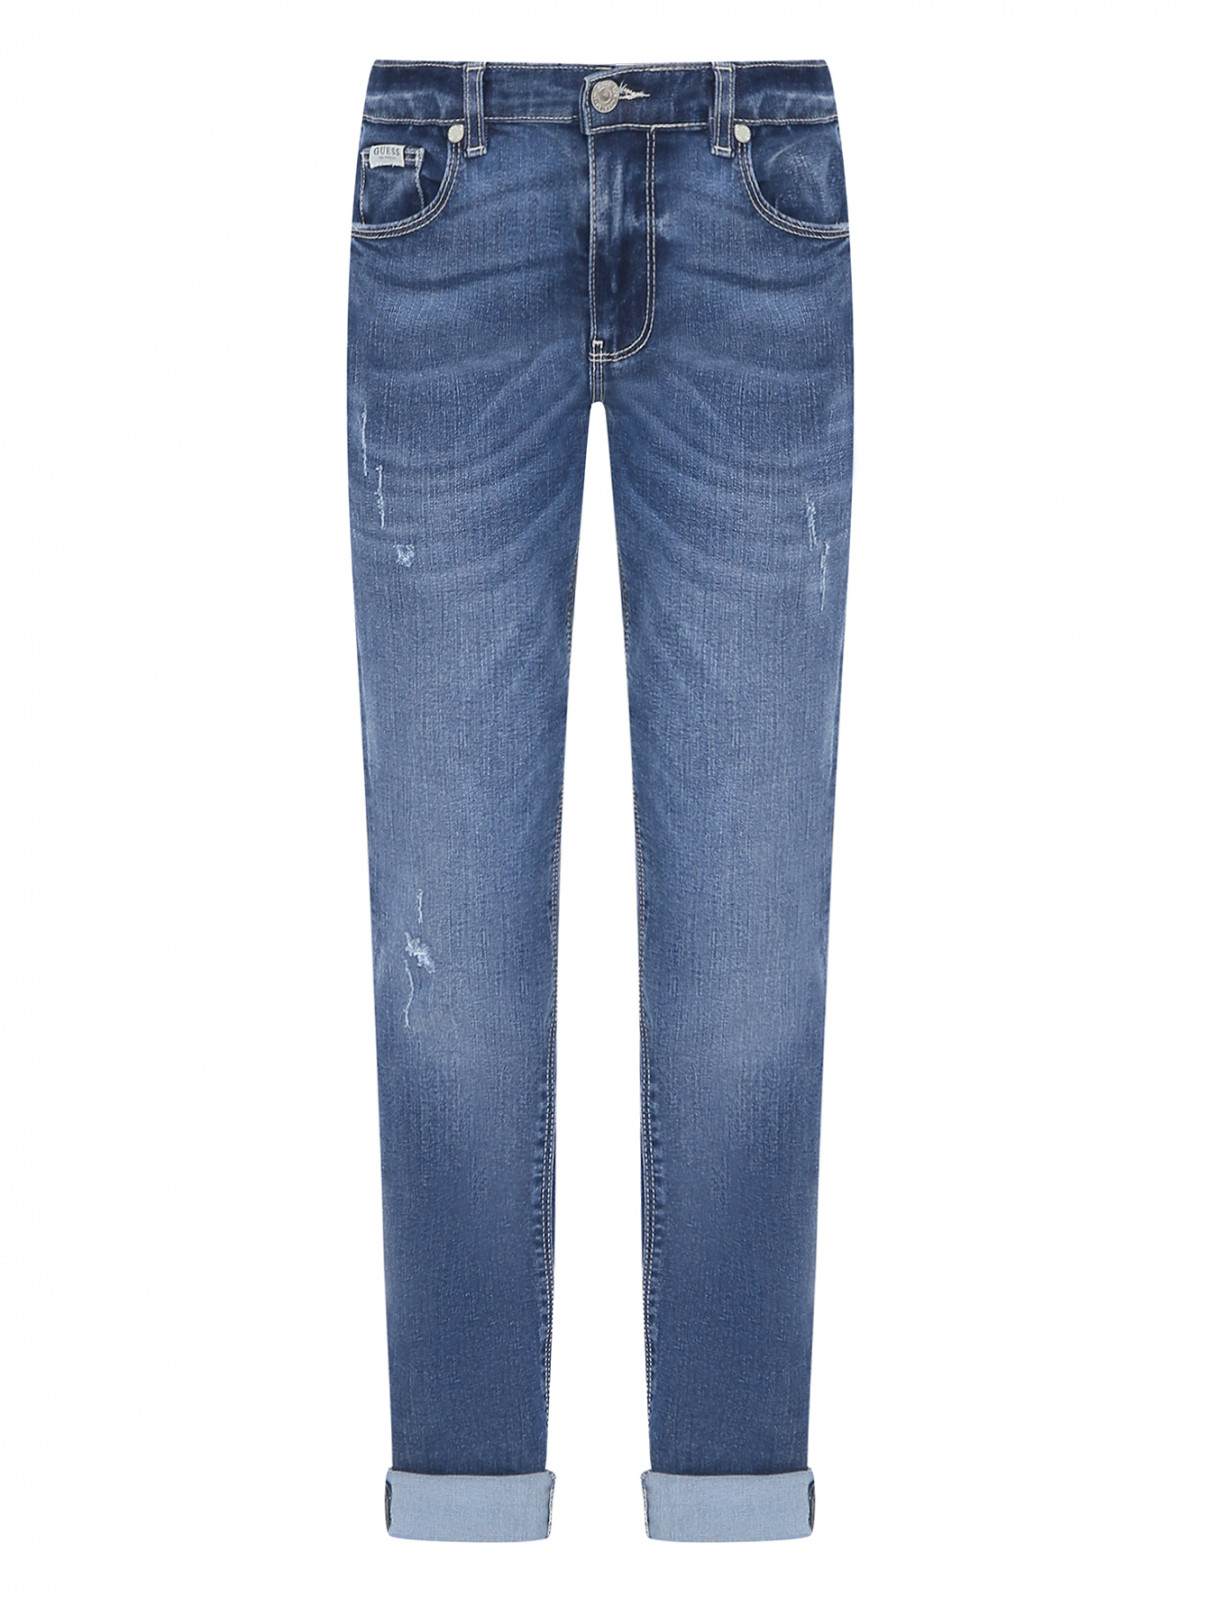 Узкие джинсы с надрезами Guess  –  Общий вид  – Цвет:  Синий